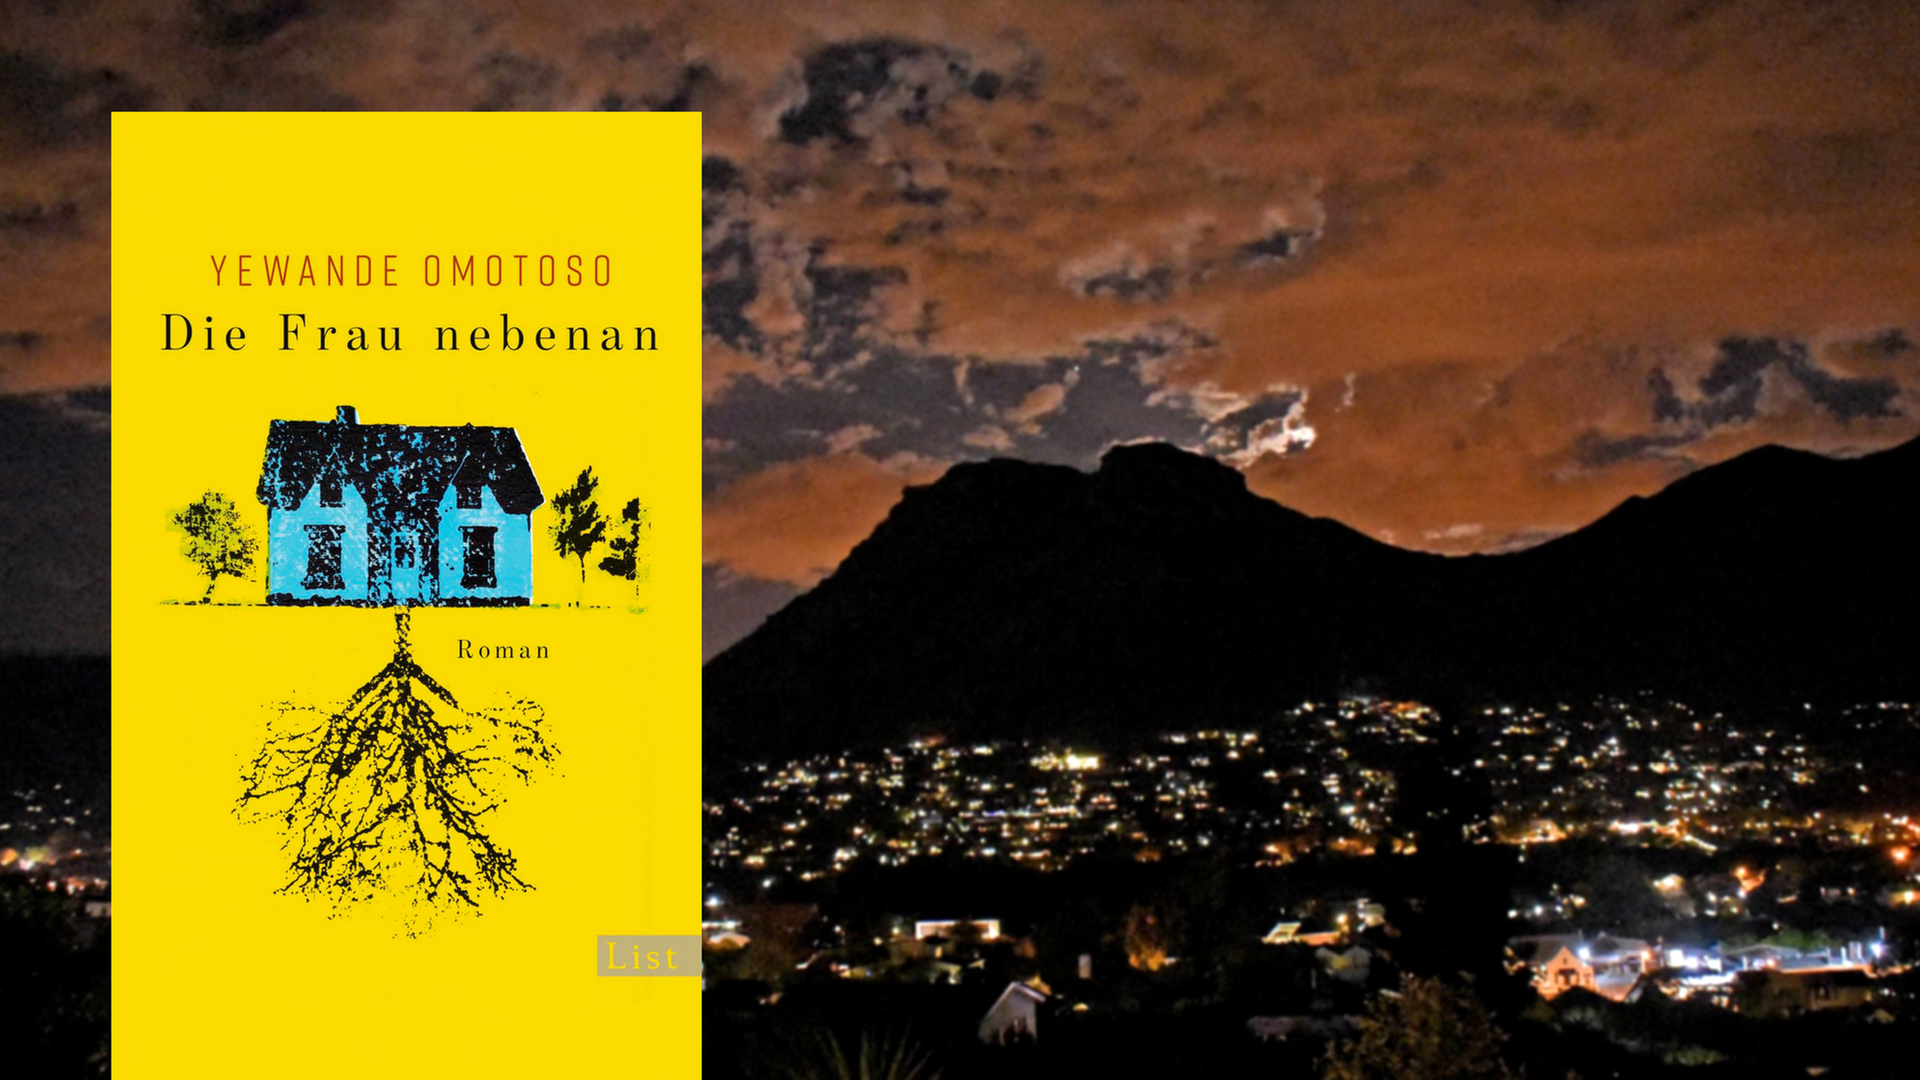 Buchcover "Die Frau nebenan" von Yewande Omotoso, im Hintergrund Kapstadt bei Nacht